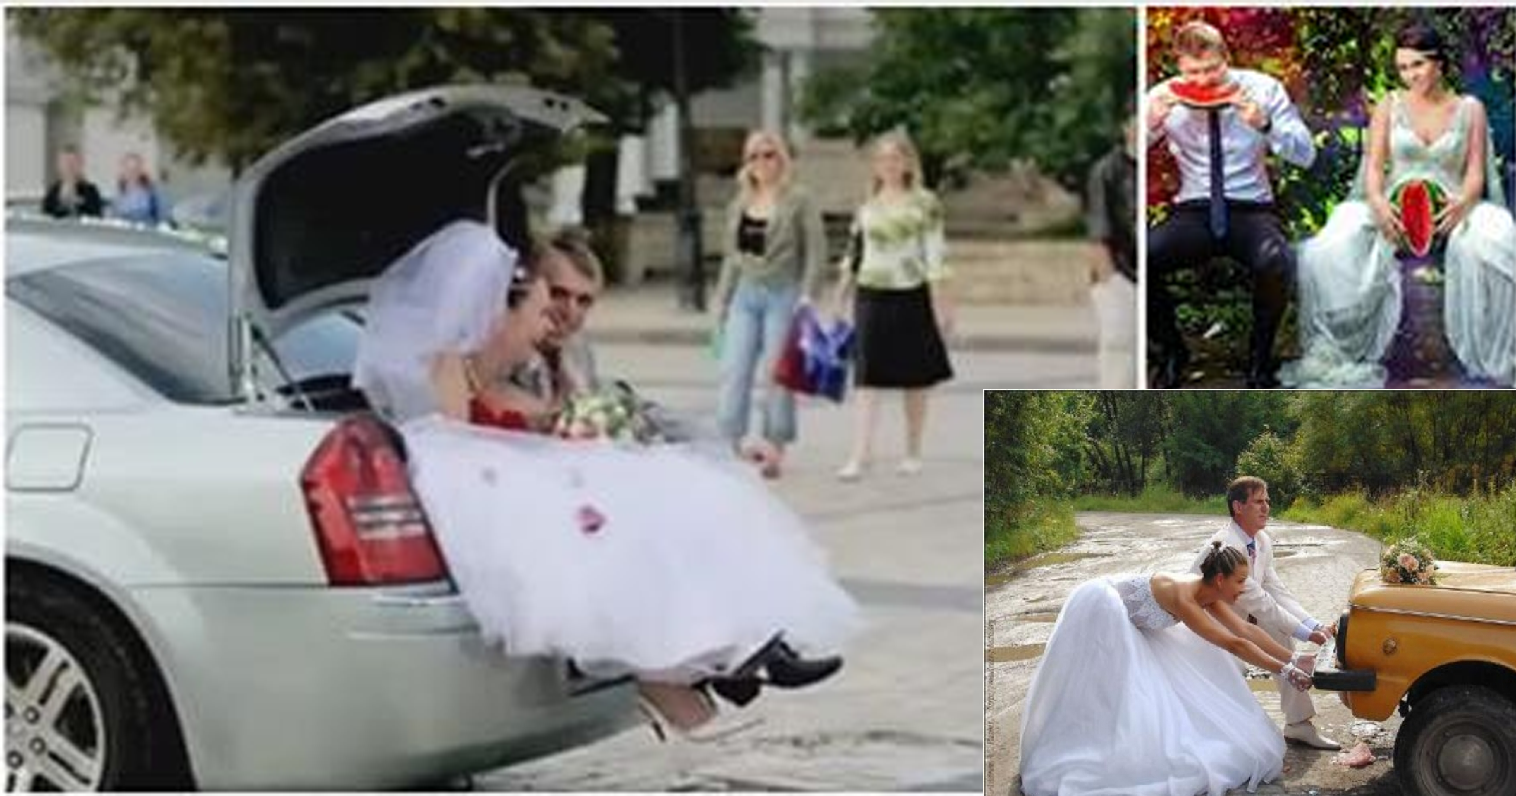 Yeni Evli Çiflerin Akıllara Durgunluk Veren Düğün Fotoğrafları!